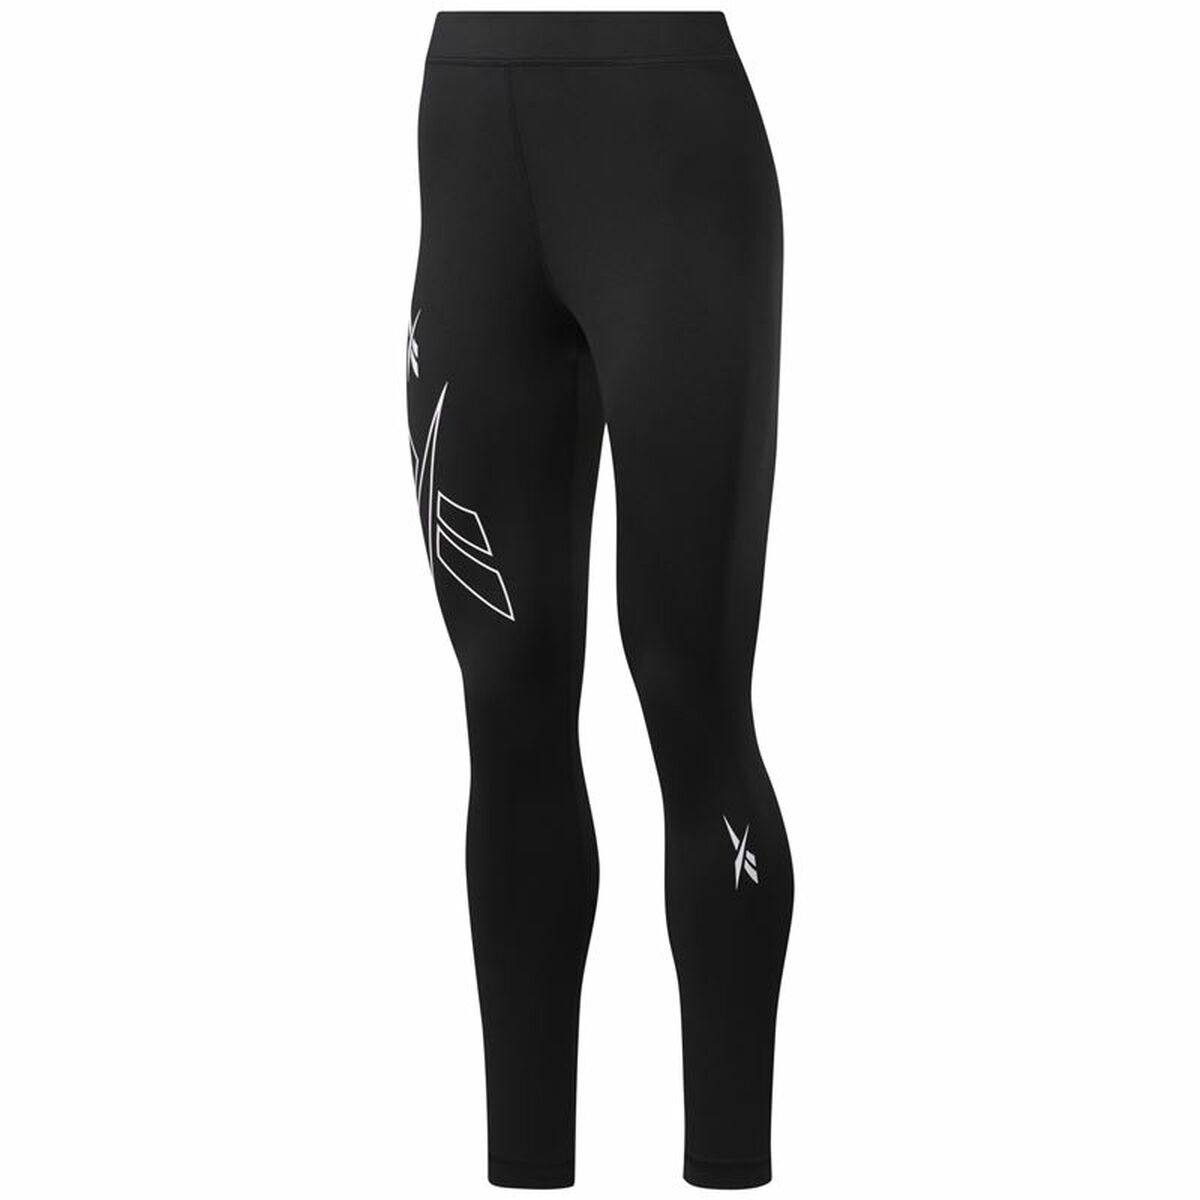 Sport leggings for Women Reebok MYT Black